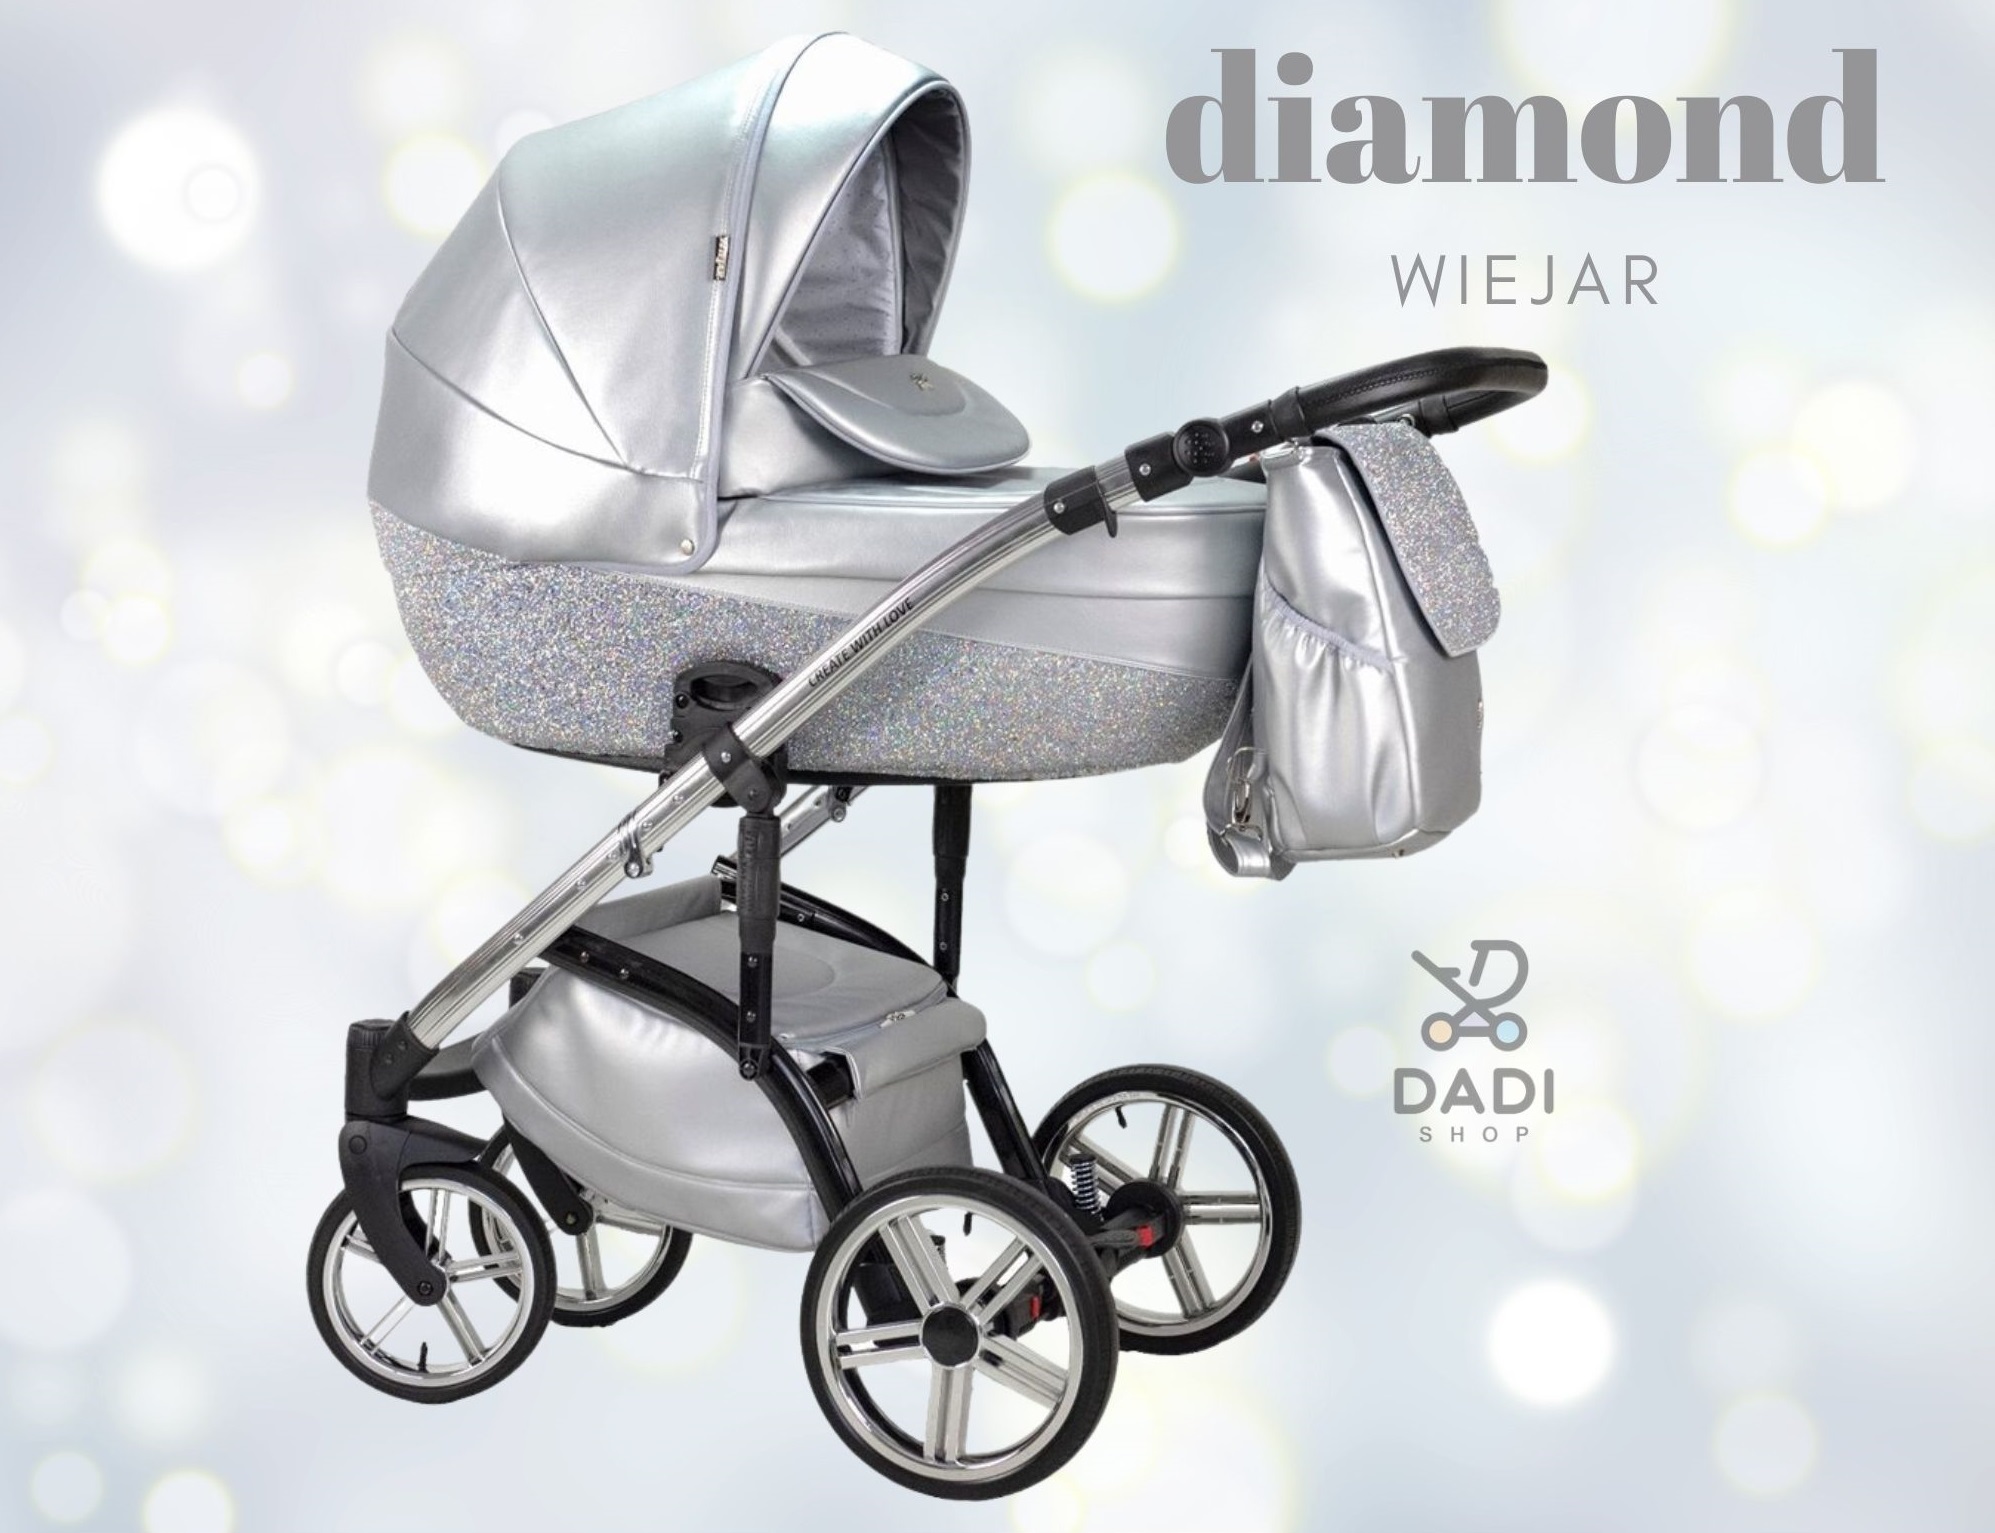 glitter baby pram wózek dziecięcy błyszczący srebrny wiejar diamond 2w1 3w1 4w1